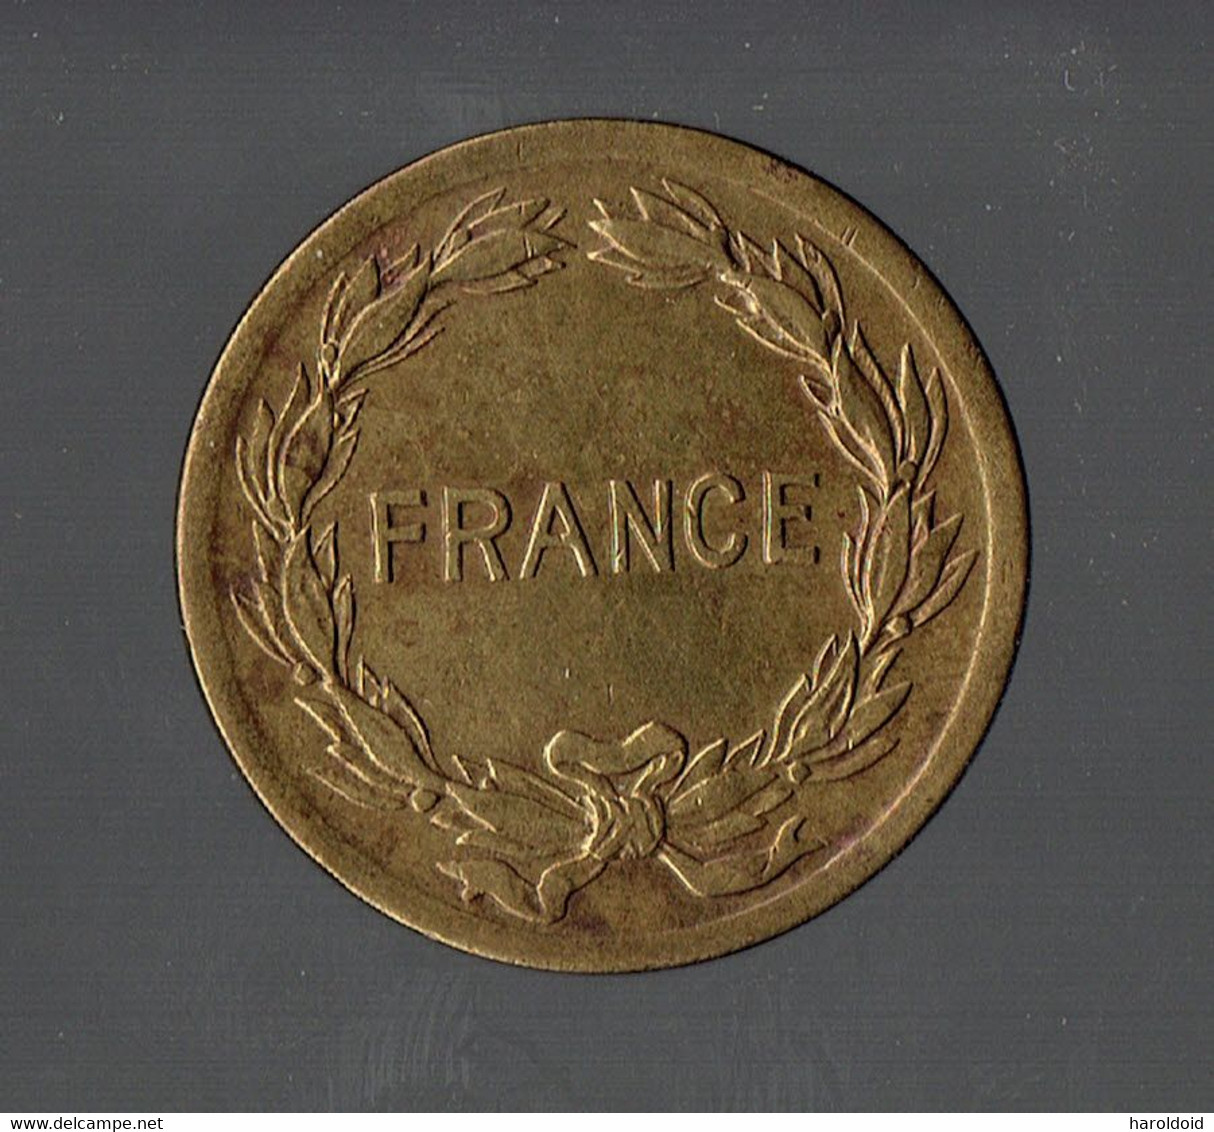 FRANCE LIBRE - 2F 1944 - TTB+ - 2 Francs